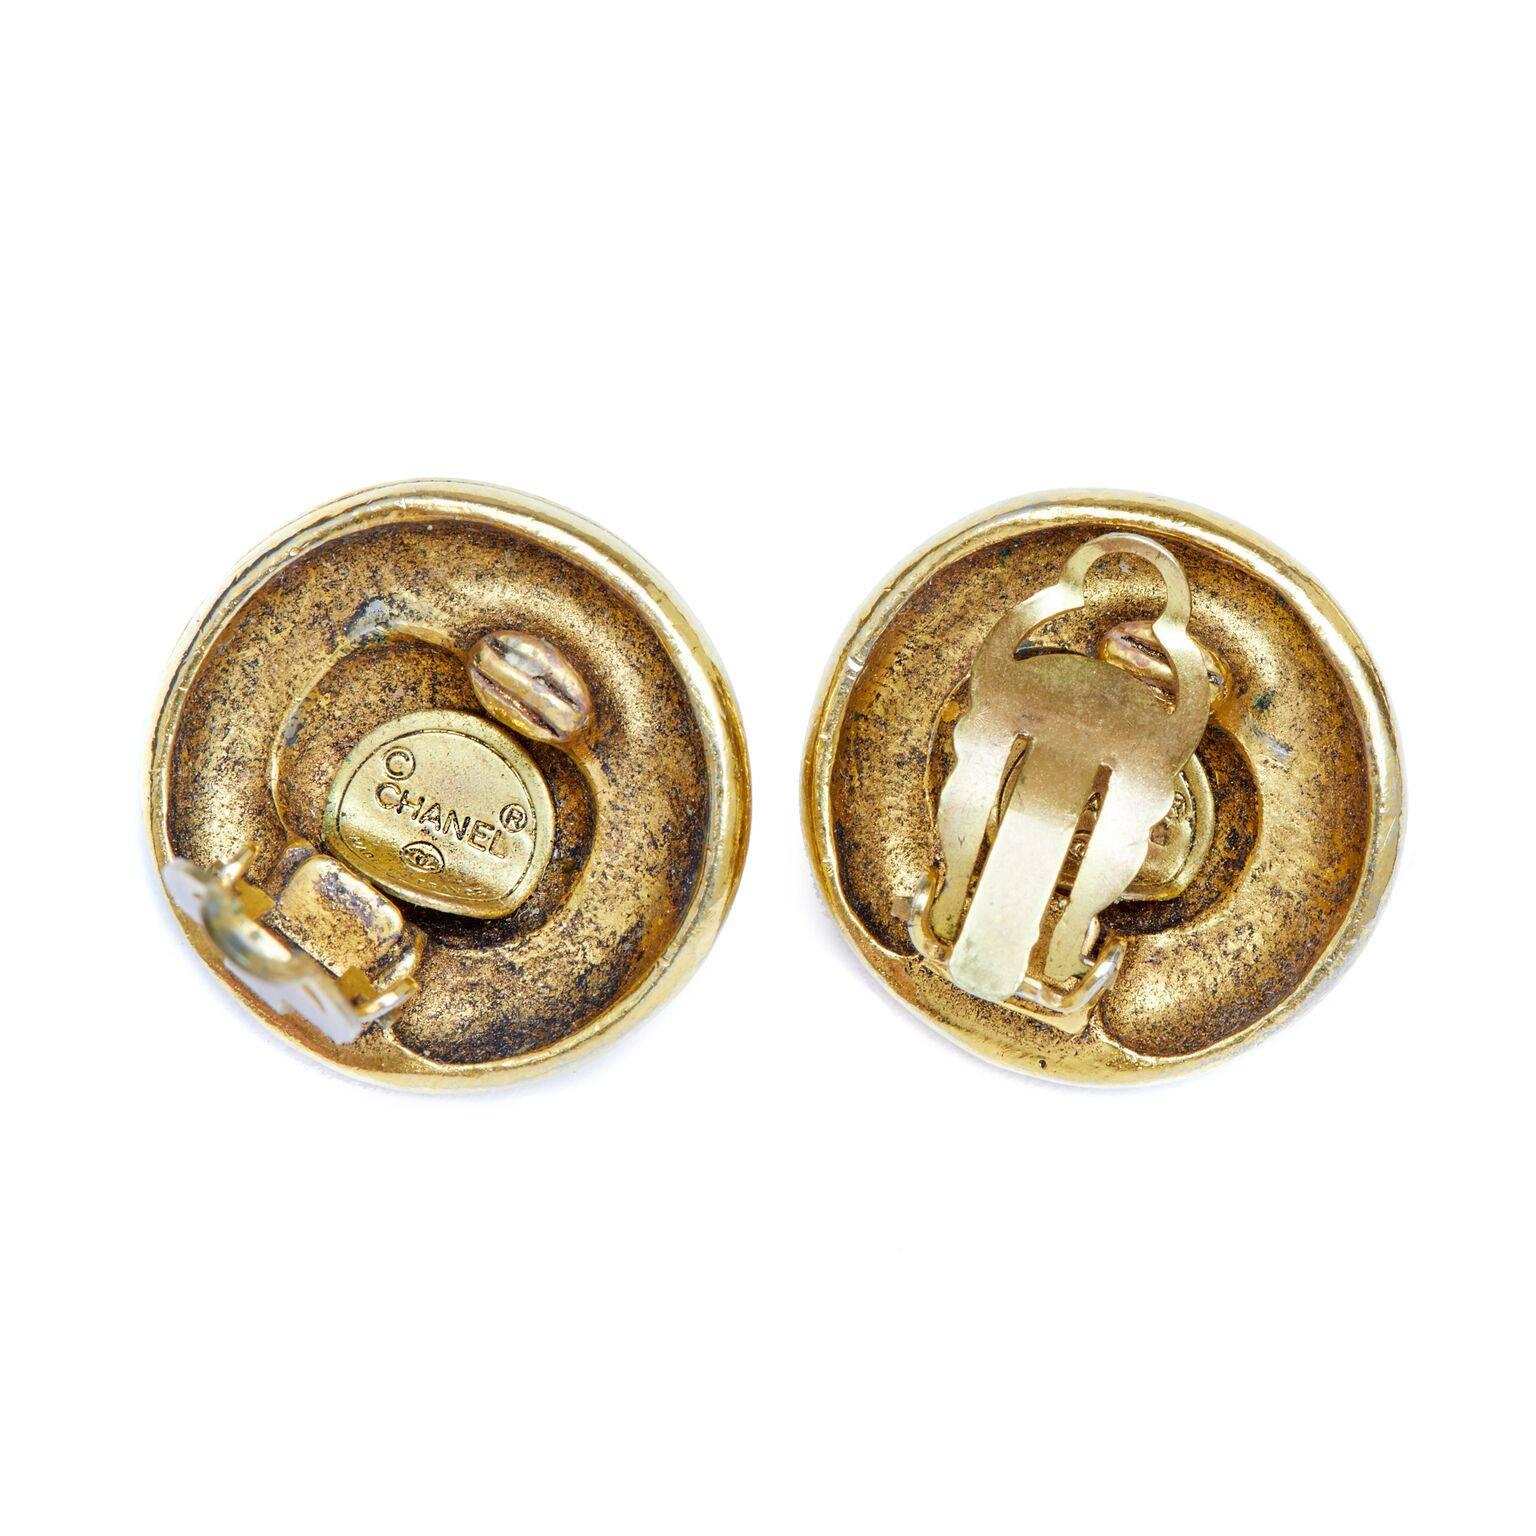 Diese klassischen Chanel-Ohrringe aus Gold der 1970er oder frühen 1980er Jahre sind von hervorragender Qualität und in hervorragendem Zustand. Ein übergroßer, runder Strassstein in der Mitte jedes Stücks ist von einem Seilmotiv aus vergoldetem